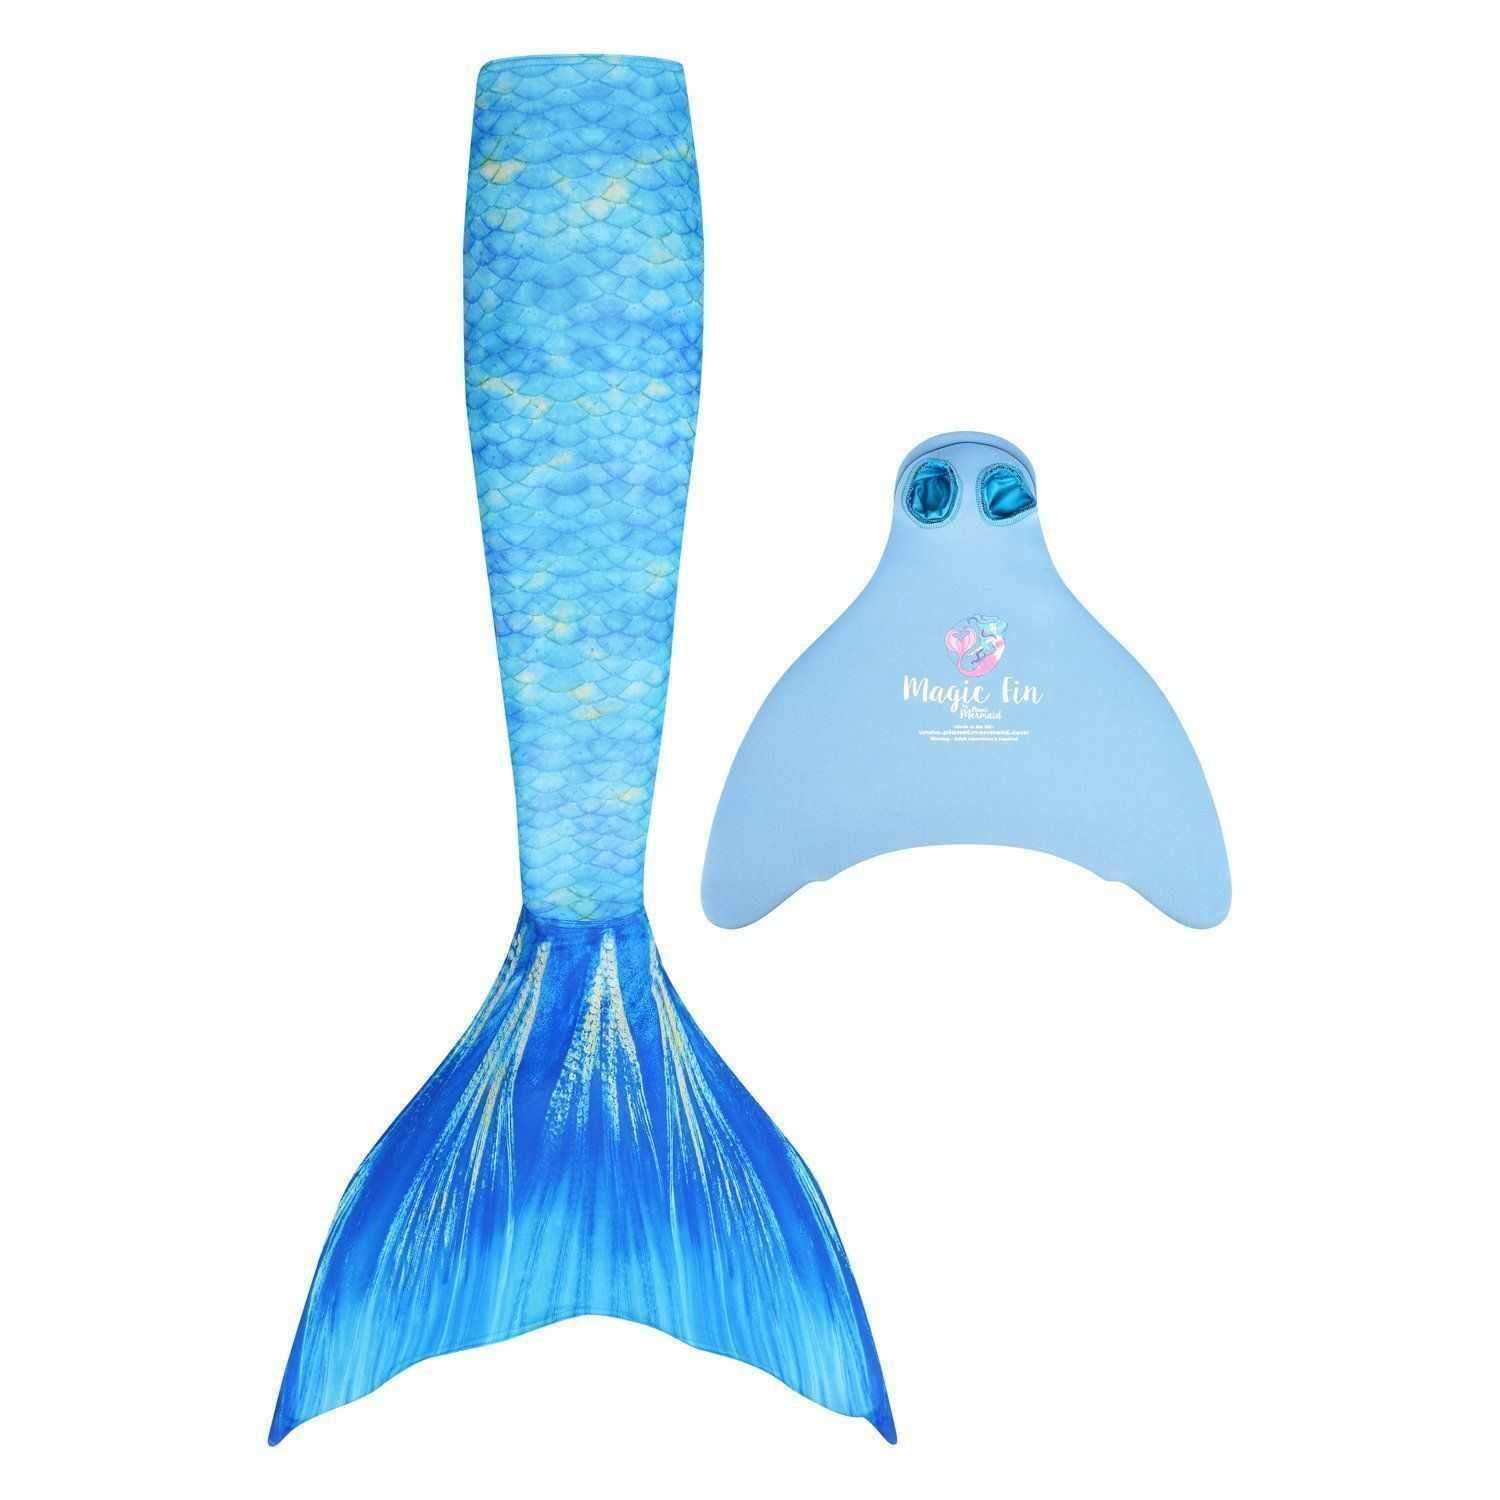 Cola Reflejos - Mermaid's Oceans 🐬 COLAS DE SIRENA artesanales para niñas  y adultas hechas a medida. 🐬 La Tienda de las Sirenas 🐬